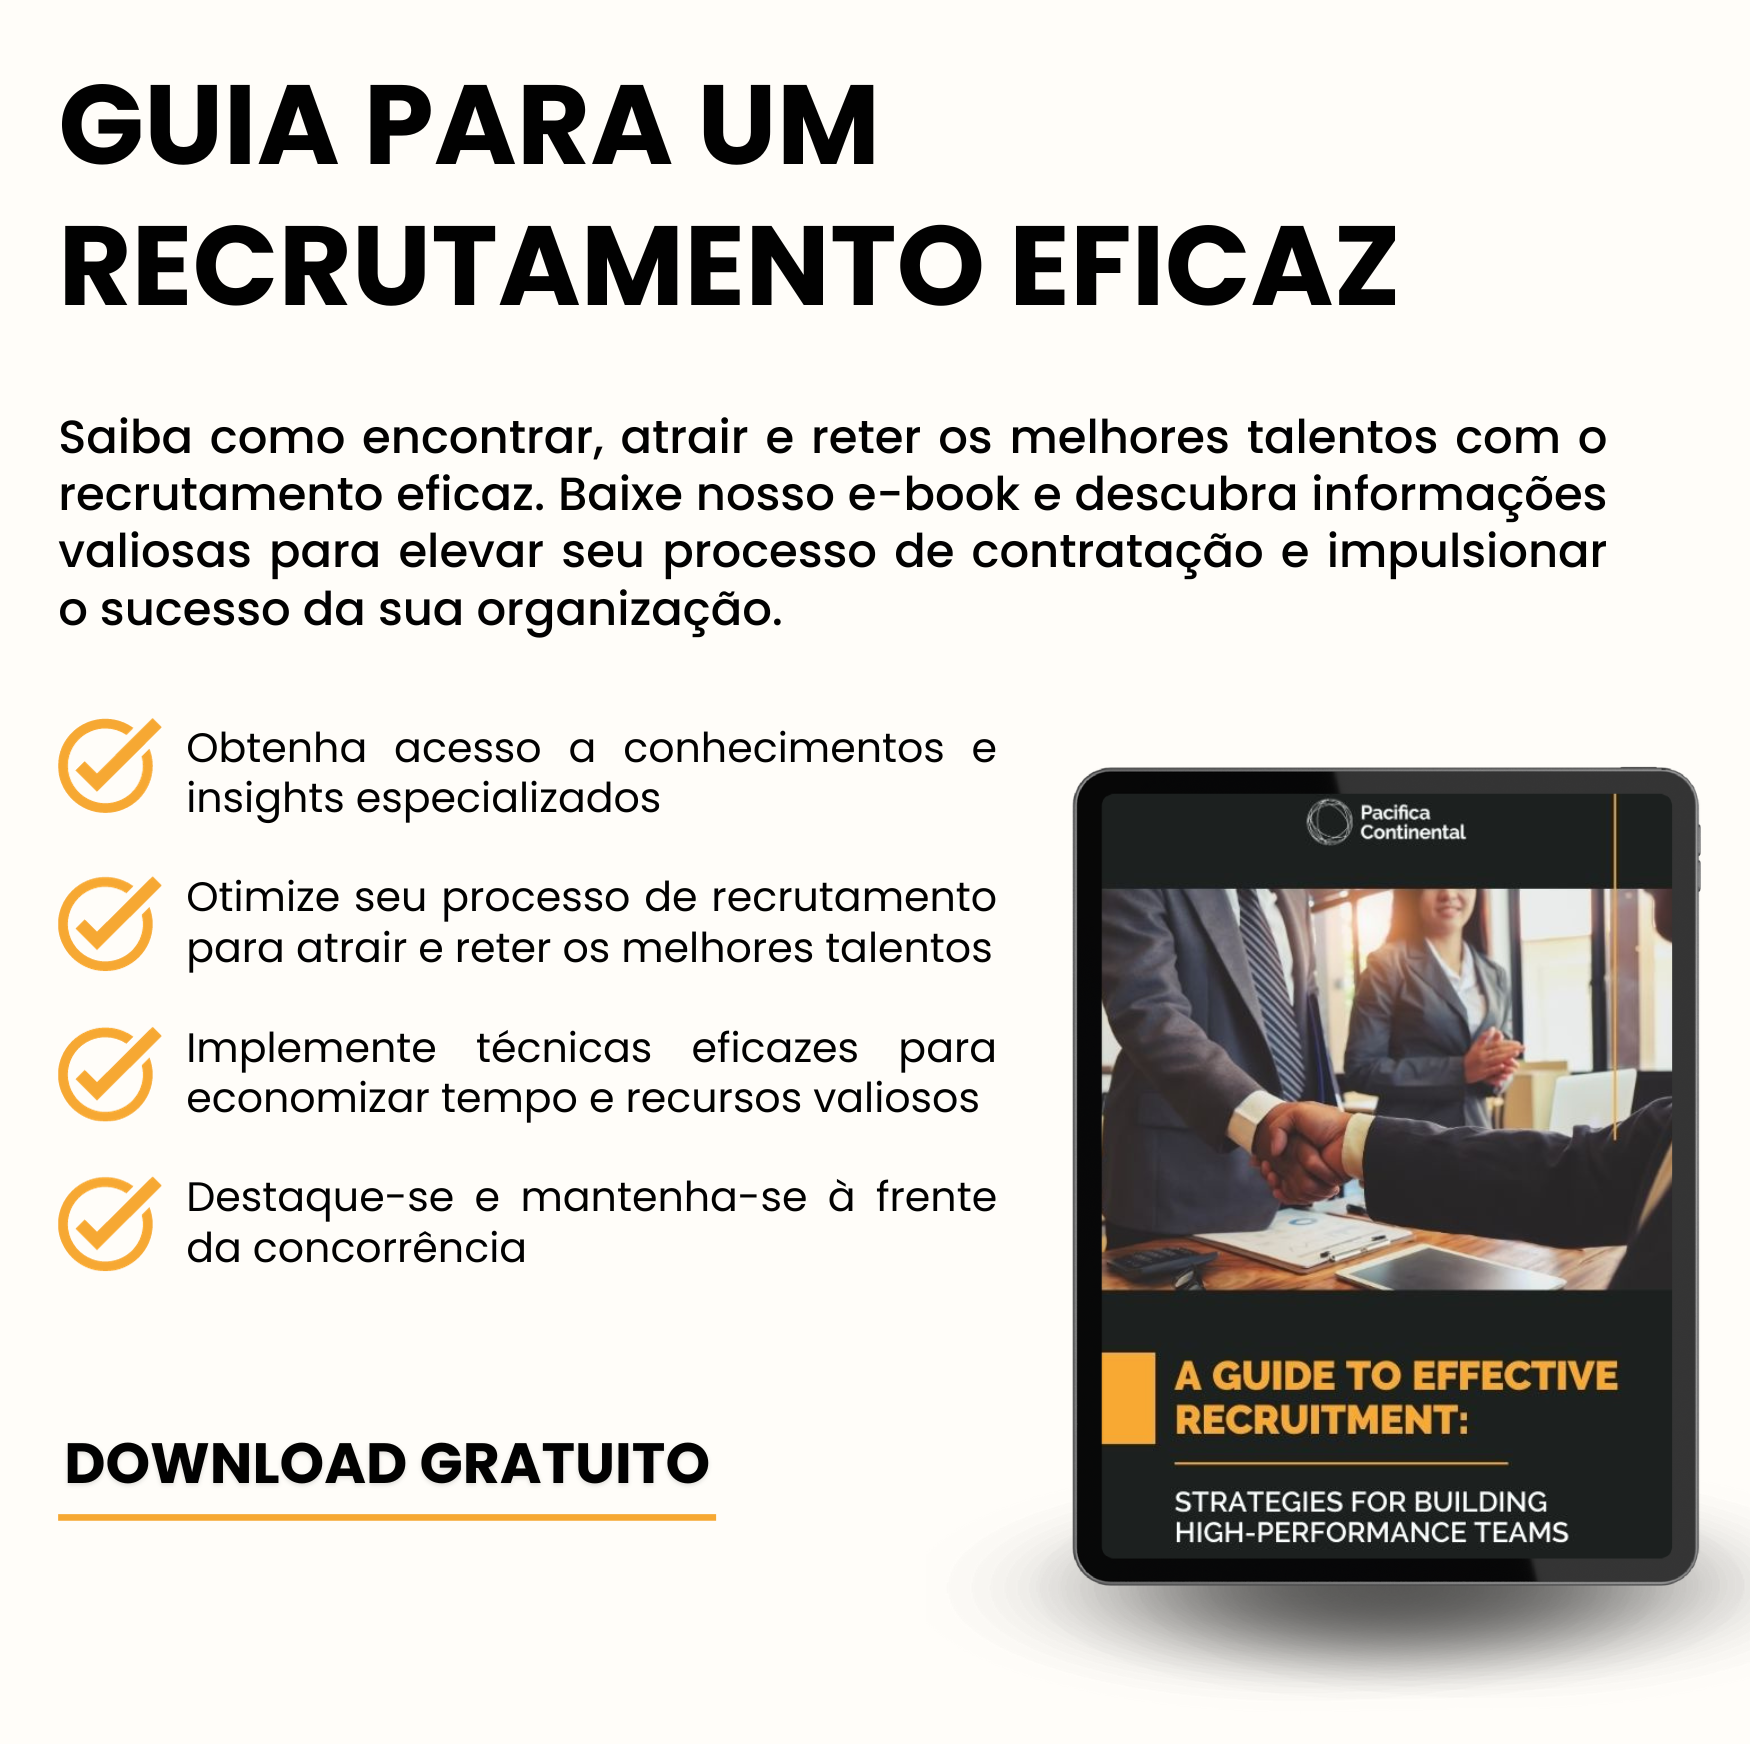 Capa Ebook Effective Recruitment (1)